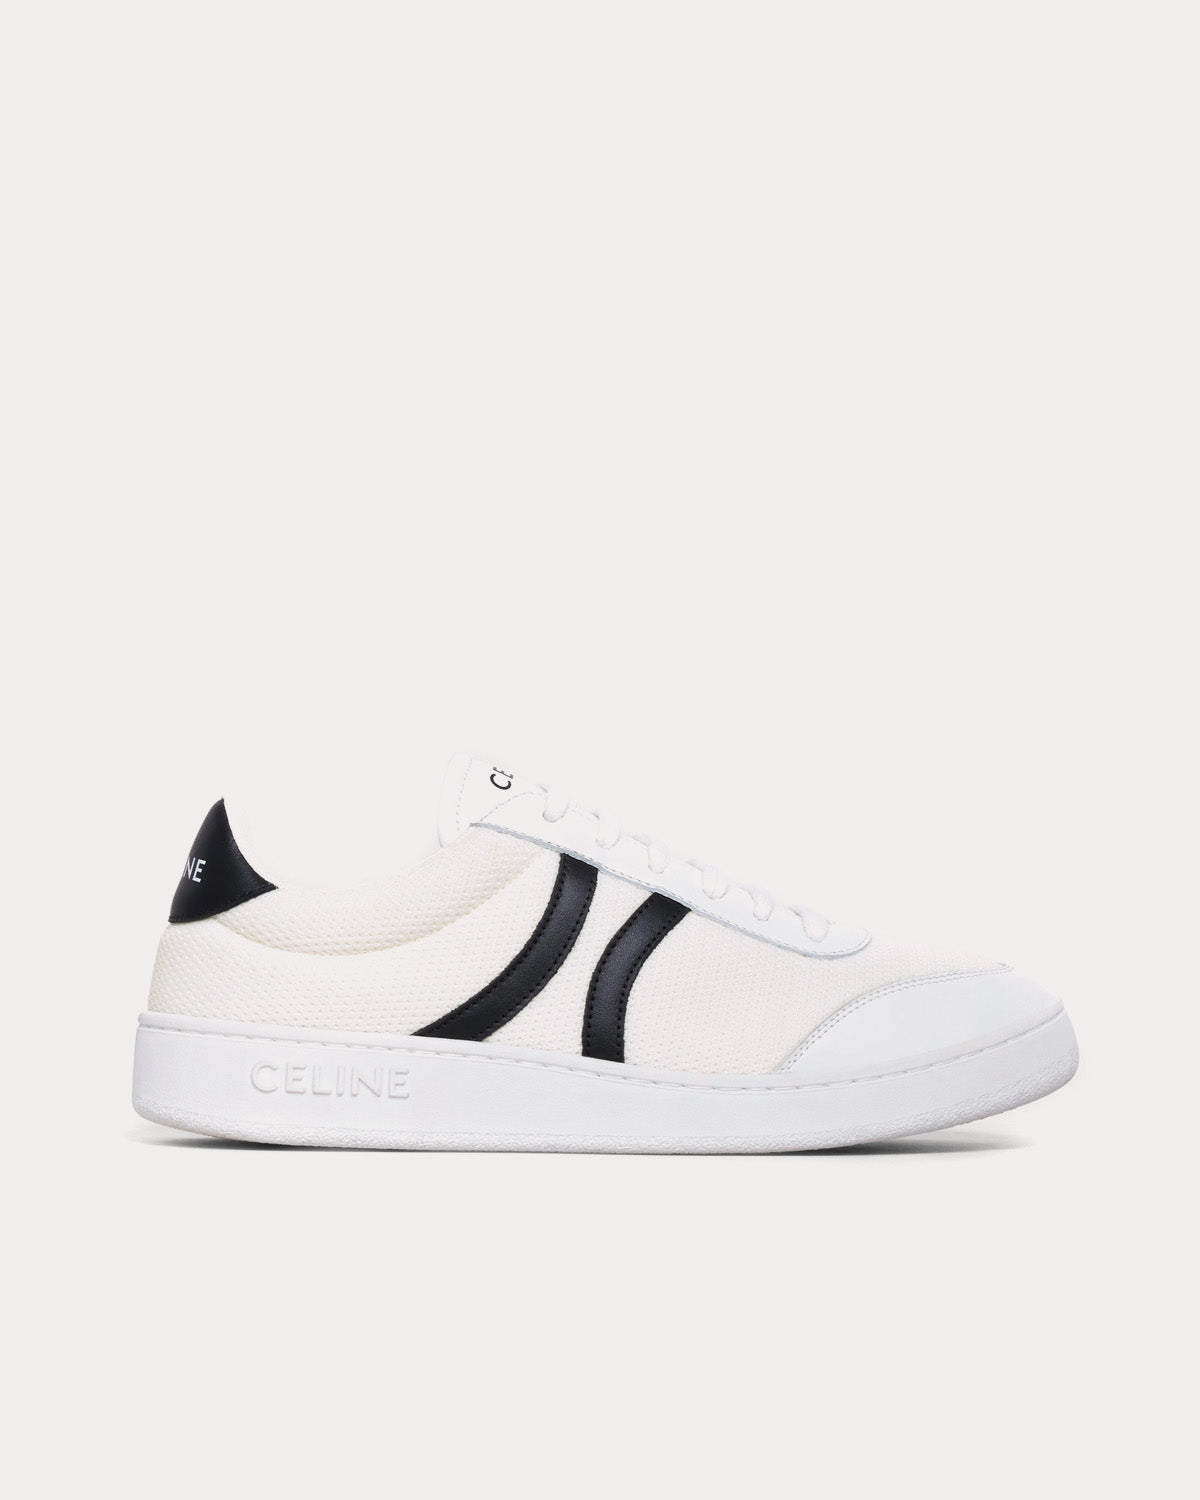 Tennis Mesh & Calfskin Optic White / Black Low Top Sneakers